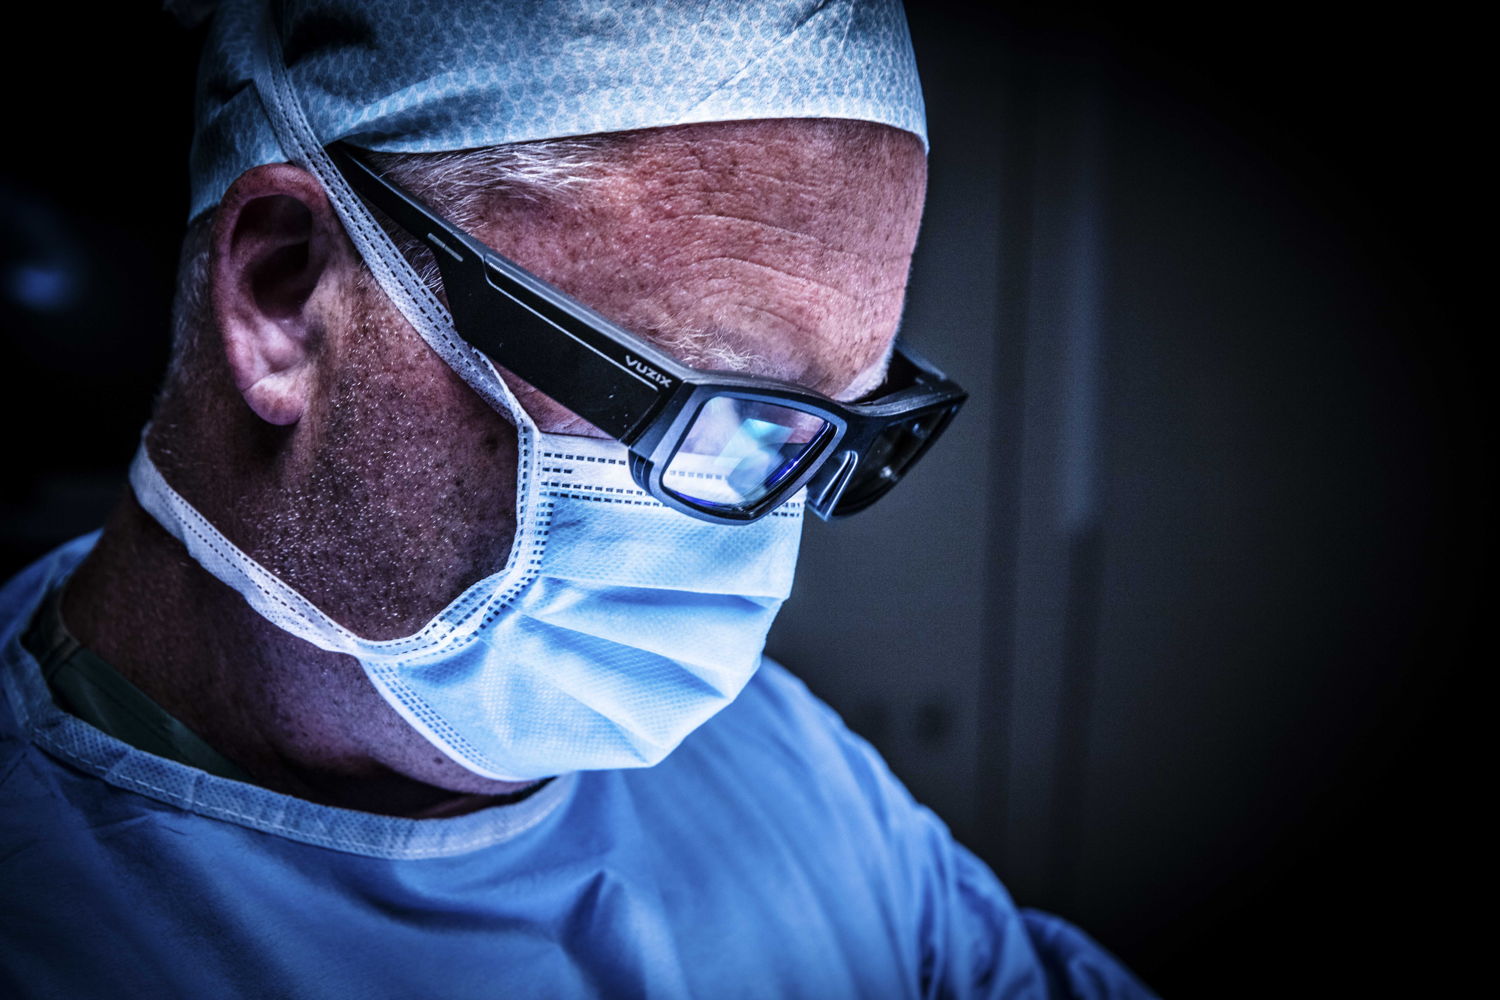 De augmented-reality-bril van NextAR toont de chirurg tijdens de ingreep extra informatie in real time en 3D over de knie en weke delen. (Credit:  Ziekenhuis Netwerk Antwerpen / Dirk Kestens)